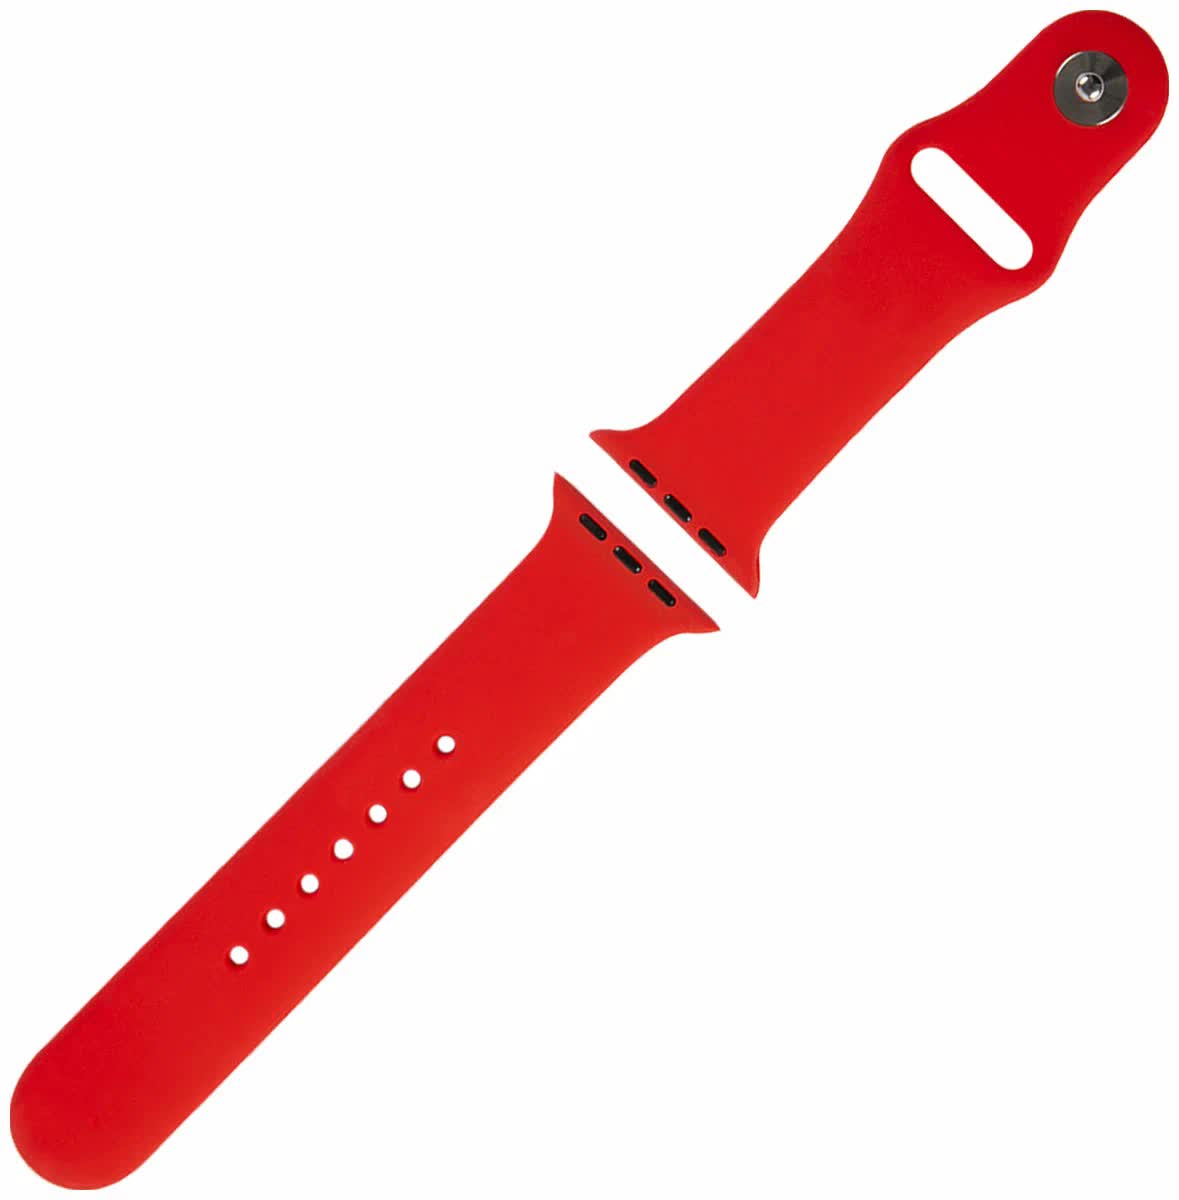 Ремешок Red Line силиконовый для Apple Watch – 38/40 mm (S3/S4/S5/SE/S6), красный УТ000027228 ремешок red line силиконовый двухцветный для apple watch 38 40 mm s3 s4 s5 se s6 черно красный ут000022899